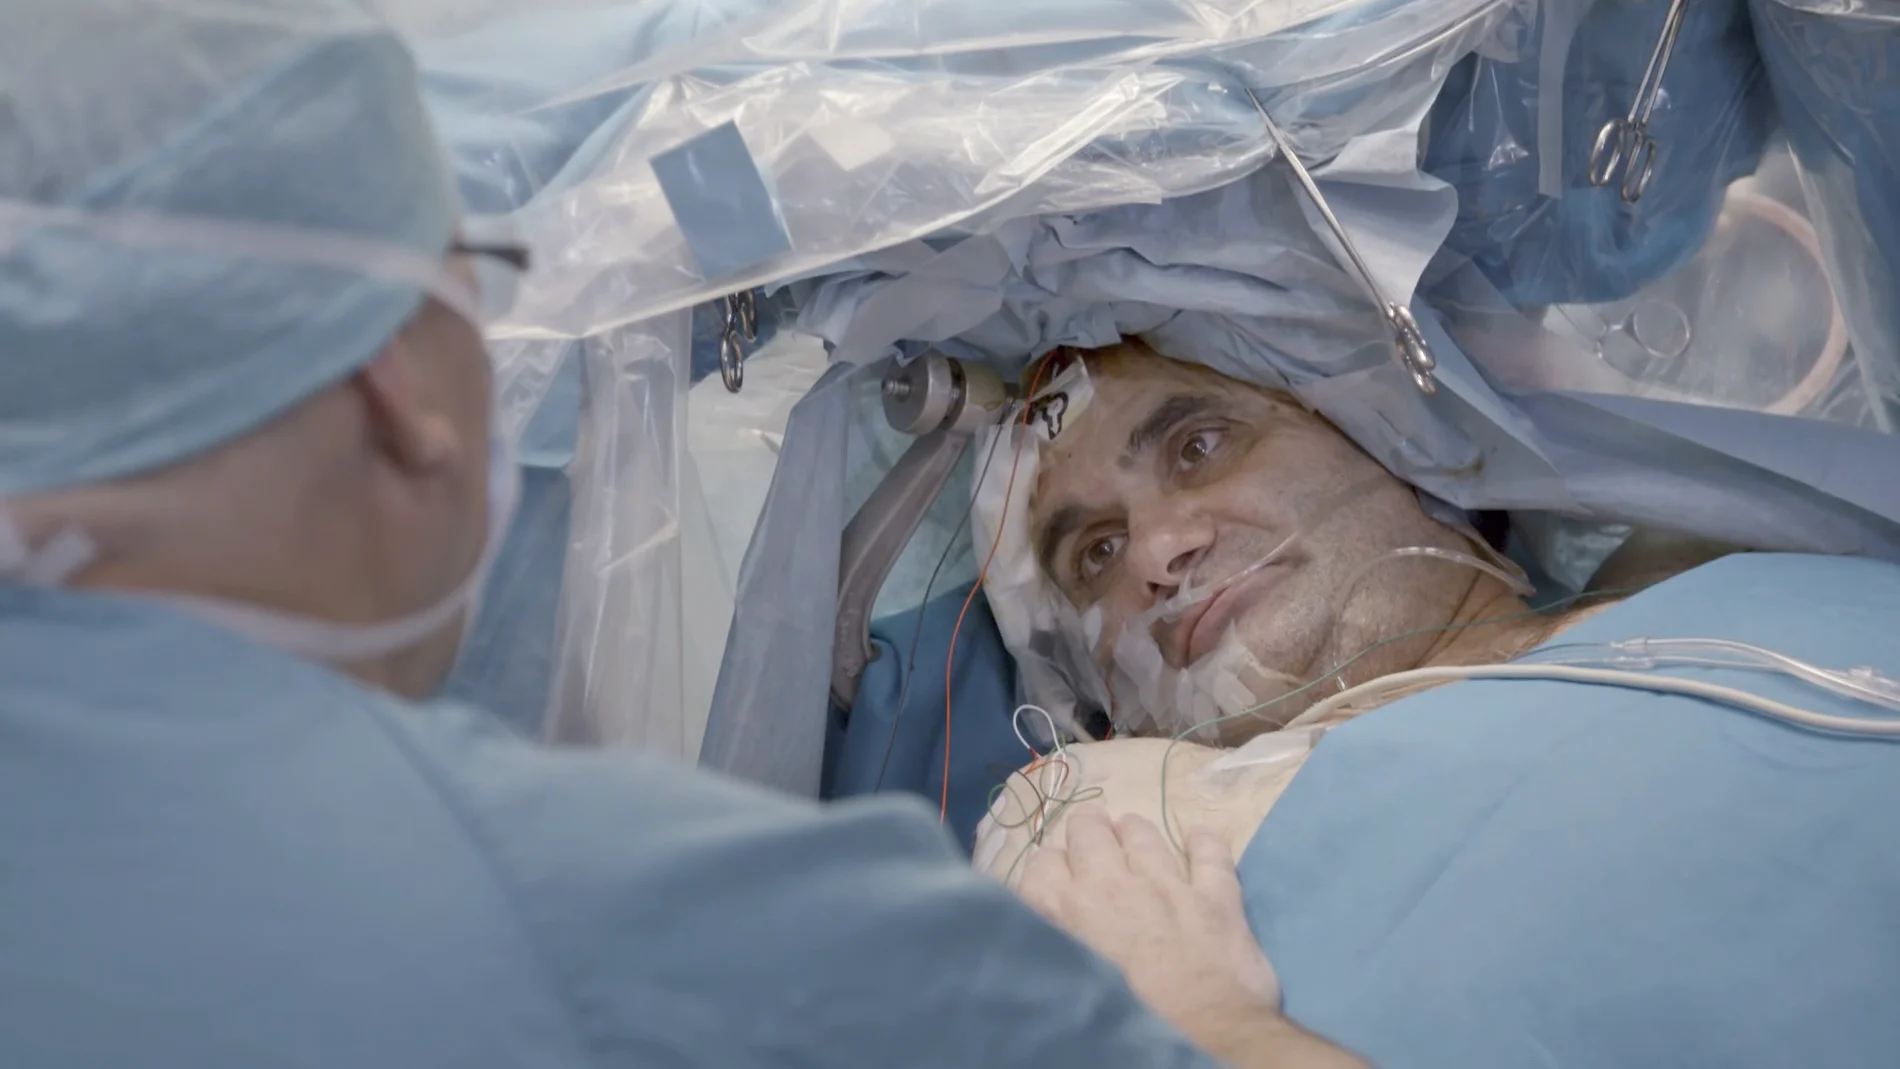 Jalis de la Serna entra en una operación a cráneo abierto en la que el paciente permanece despierto mientras le extirpan un tumor cerebral